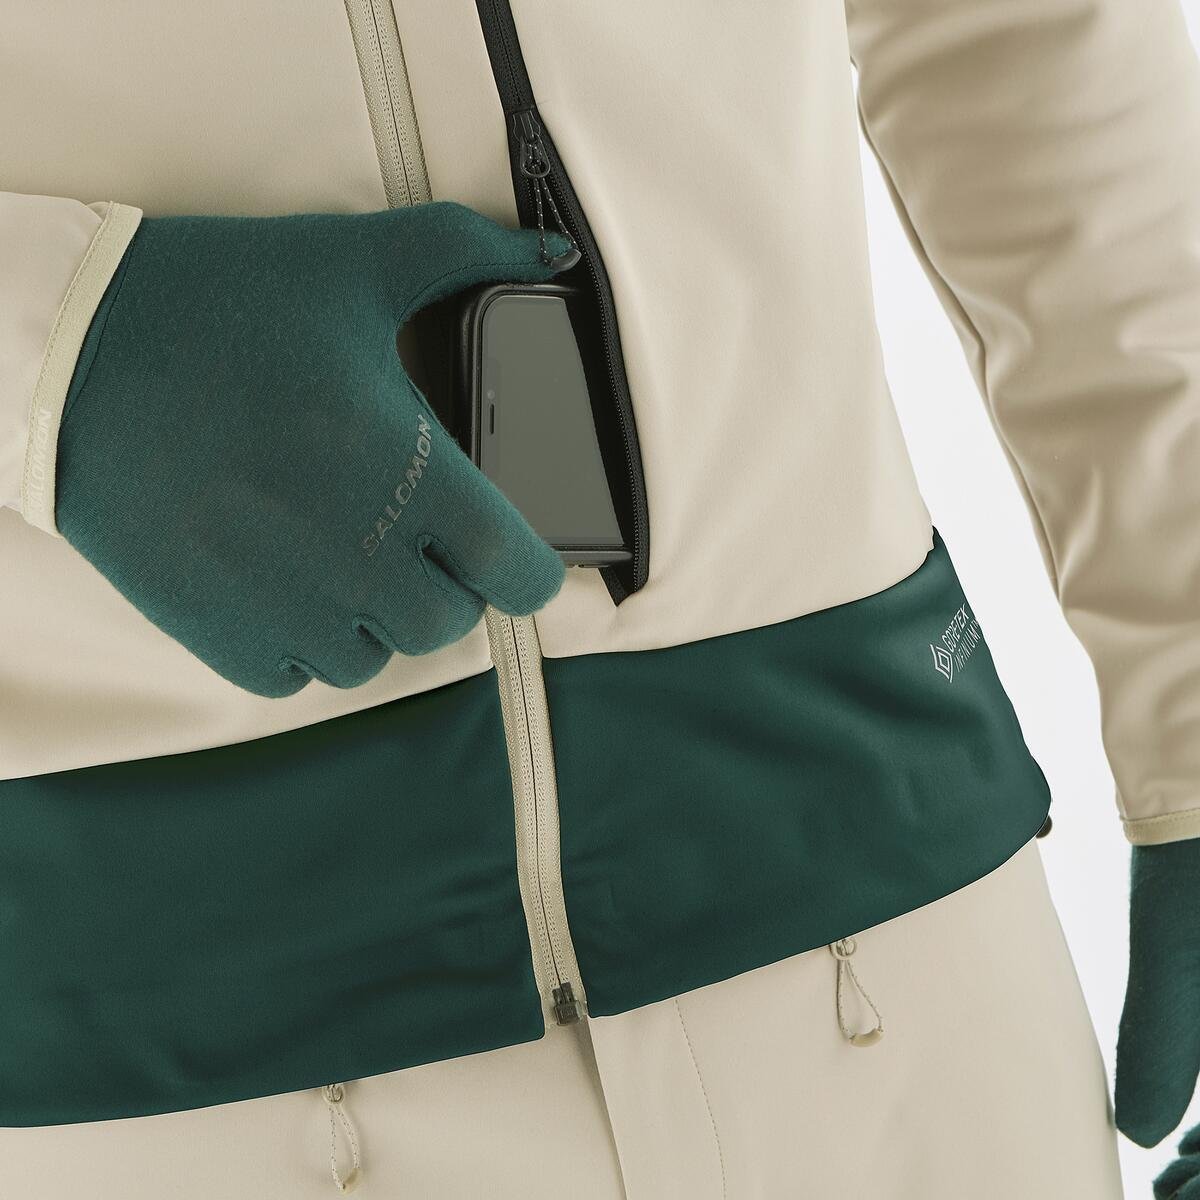 Куртка Salomon MTN GTX® Softshell JKT M - бежевий/зелений